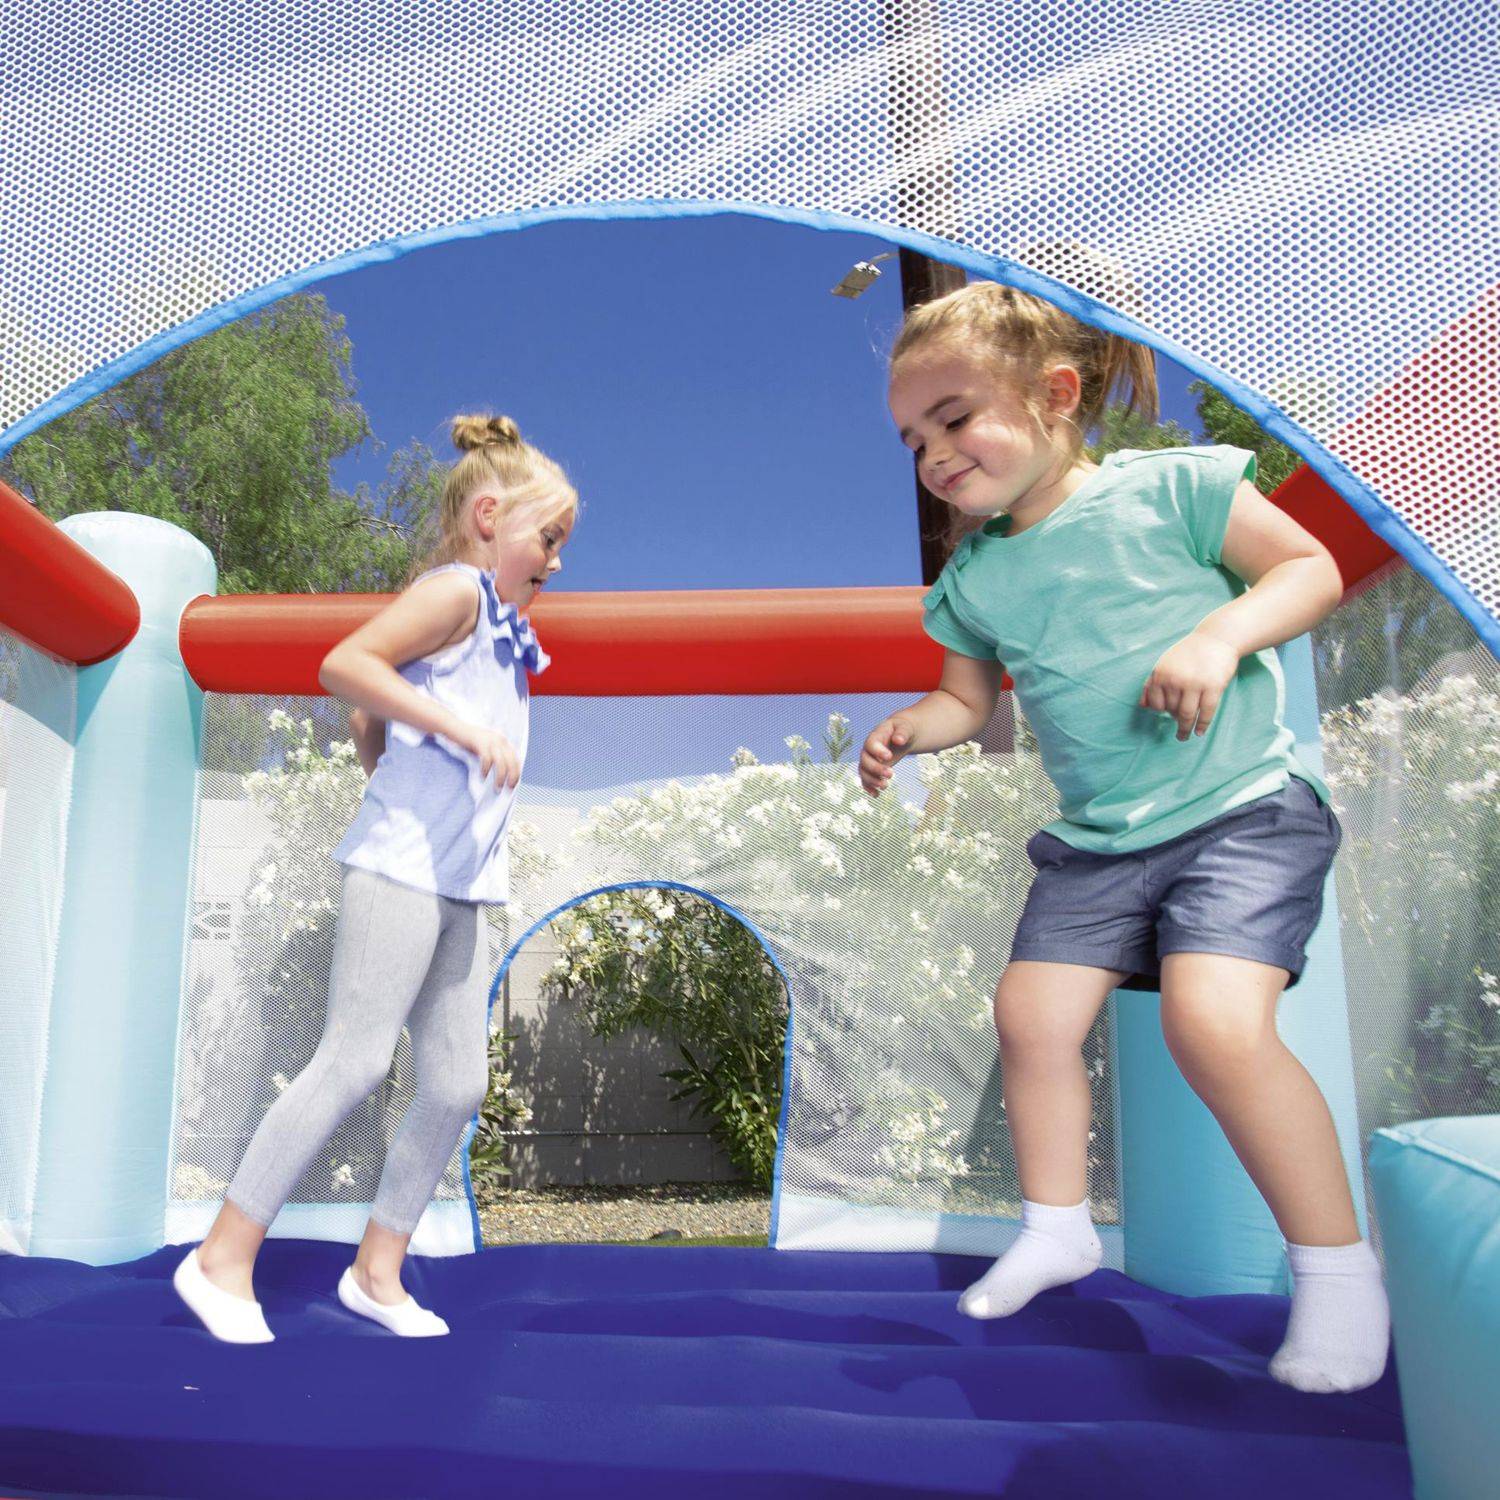 Château gonflable - Chambord - structure trampoline gonflable, aire de jeu pour enfants, 2,5 x 2,1 x 1,5 m Photo6